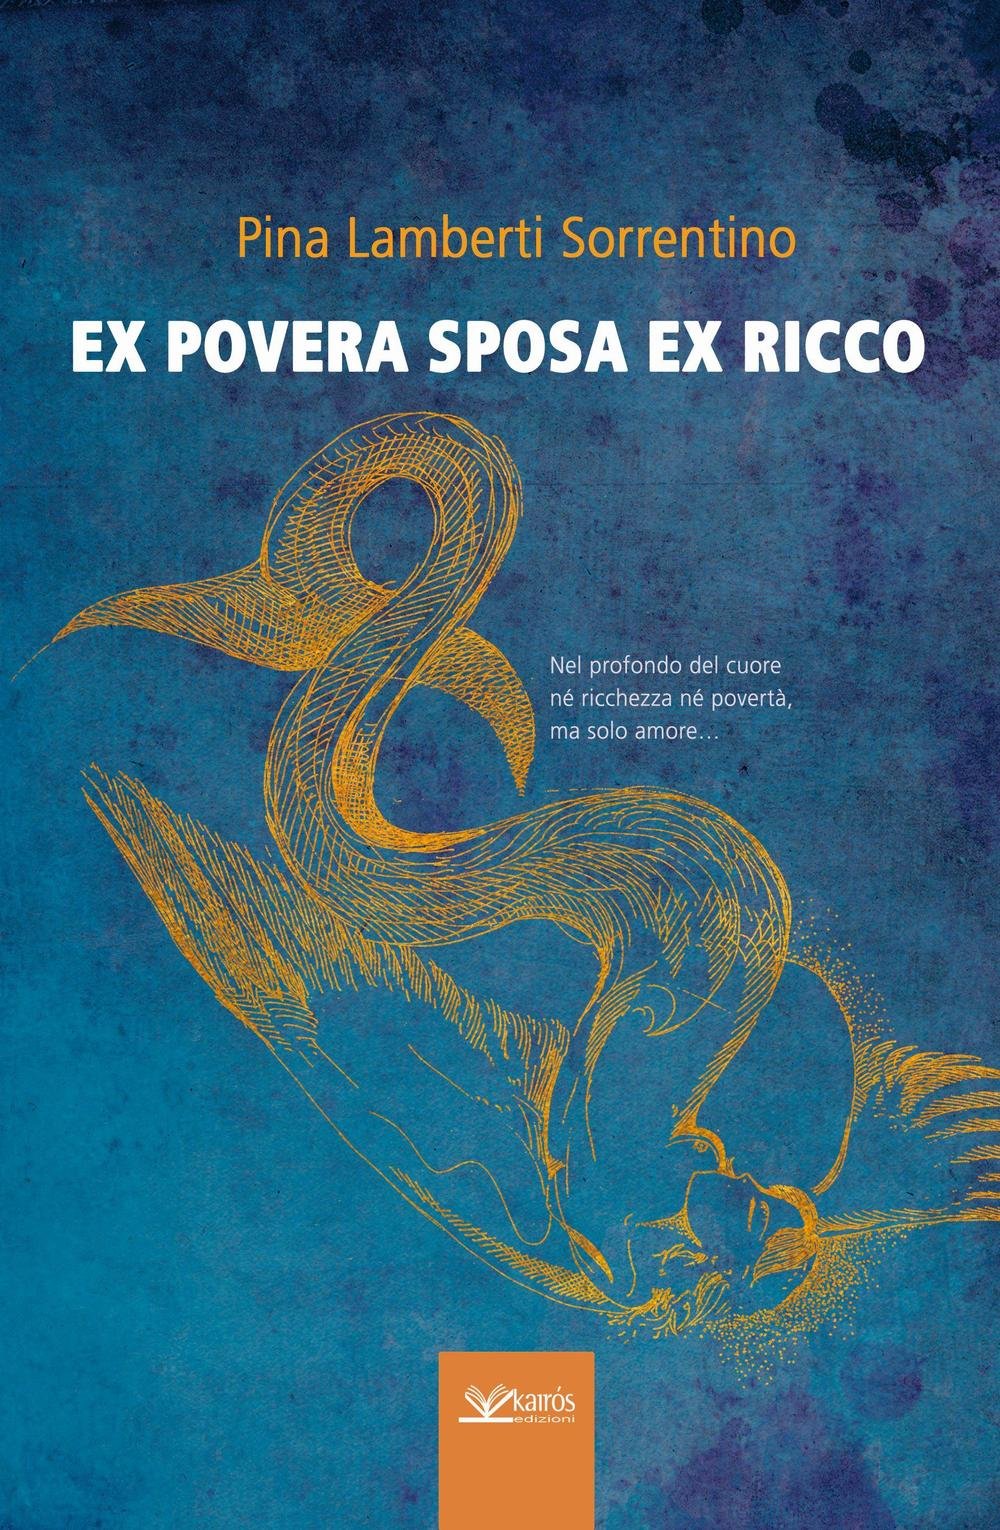 EX POVERA SPOSA EX RICCO - Pina Lamberti Sorrentino